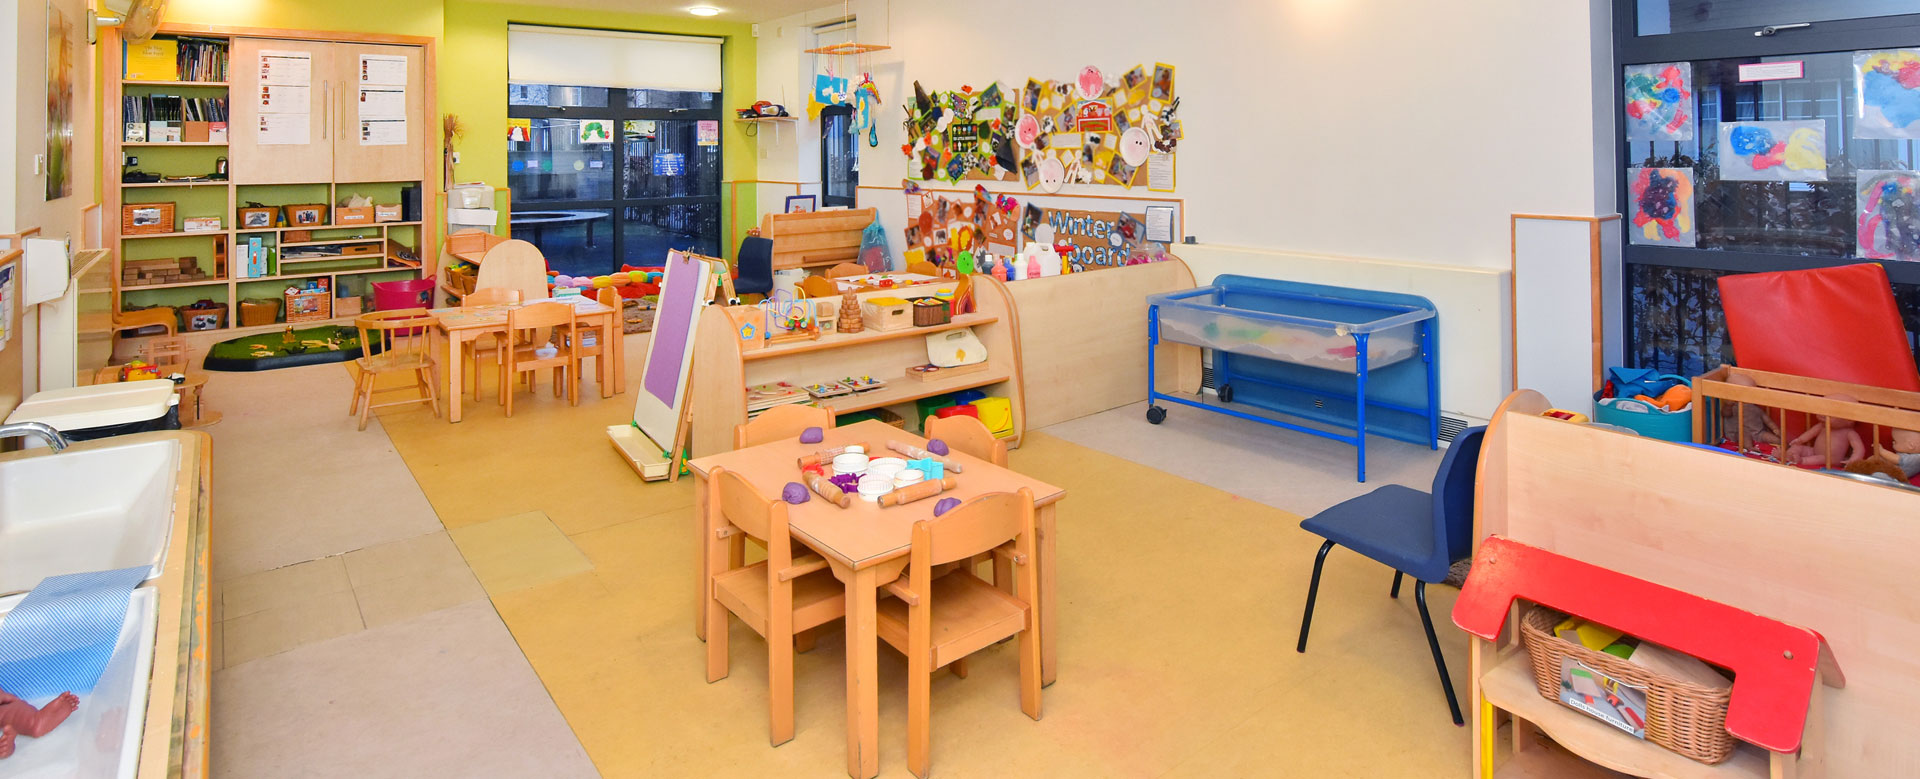 Hinchley Wood Day Nursery and Preschool